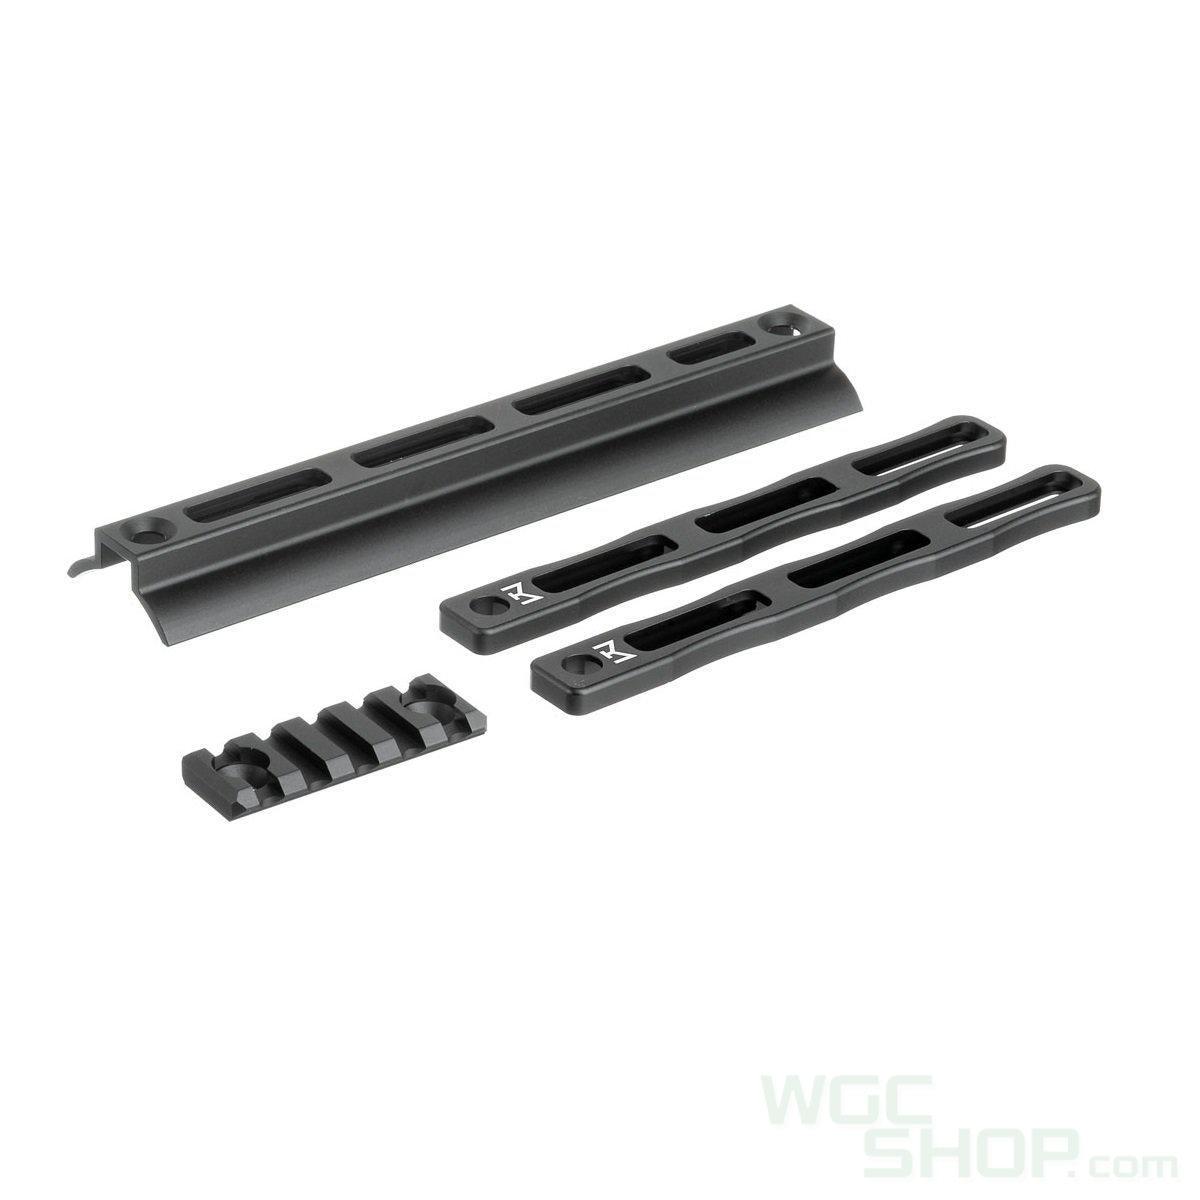 AIRSOFT ARTISAN SCAR M-Lok Adapter Kit for WE SCAR | WGC Shop